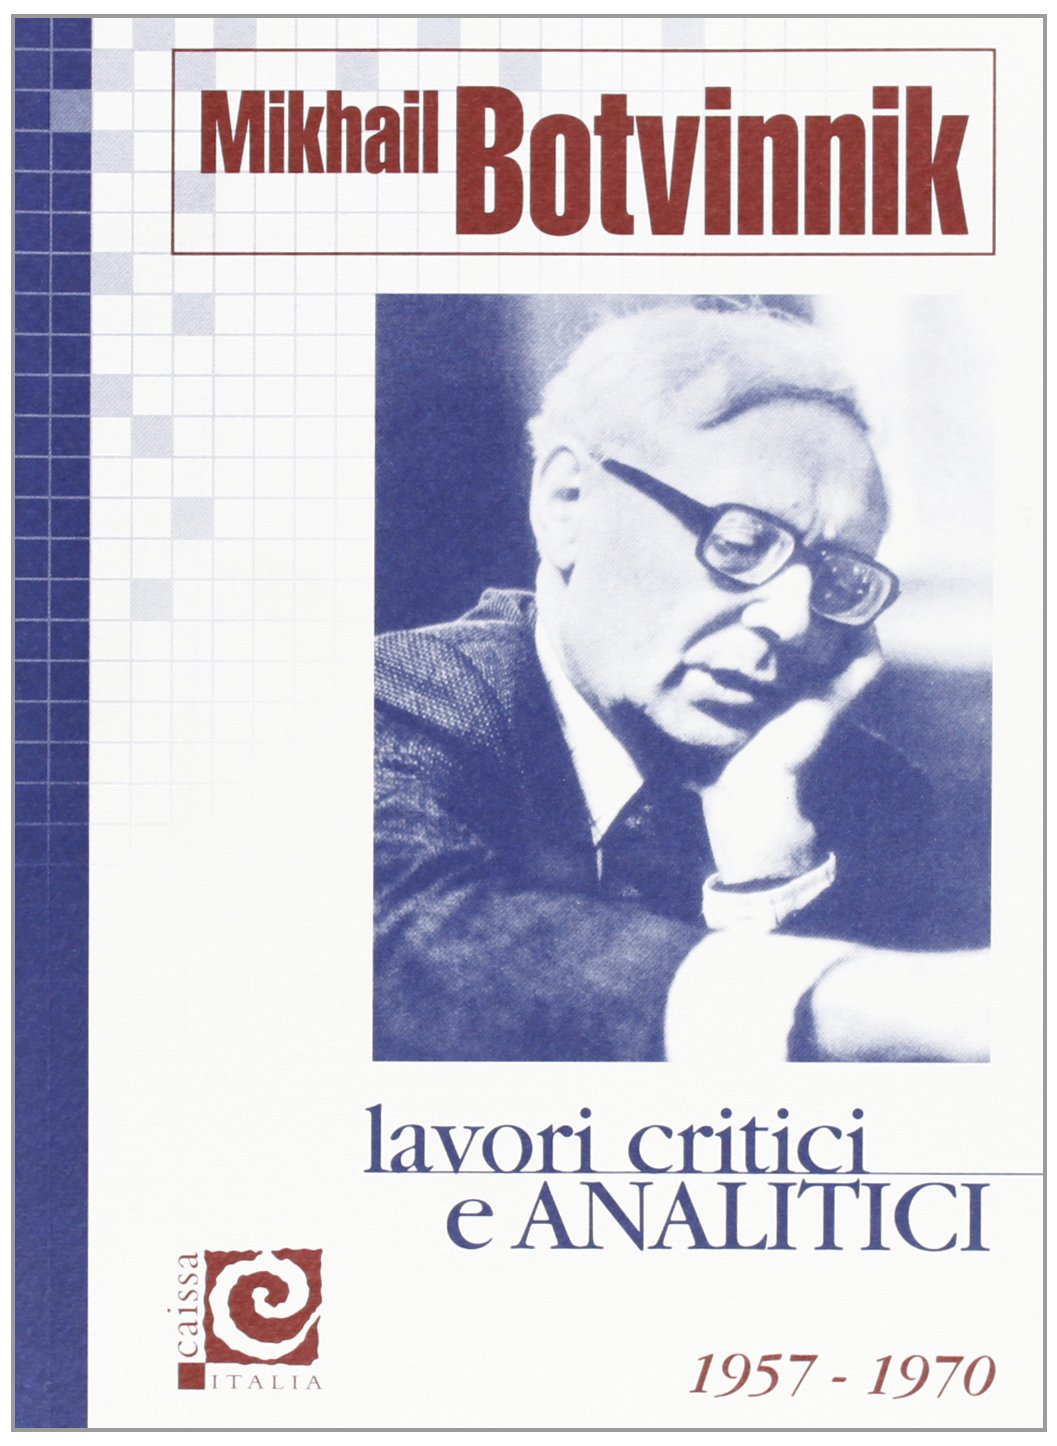 Mikael Botvinnik: Lavori critici e Analitici